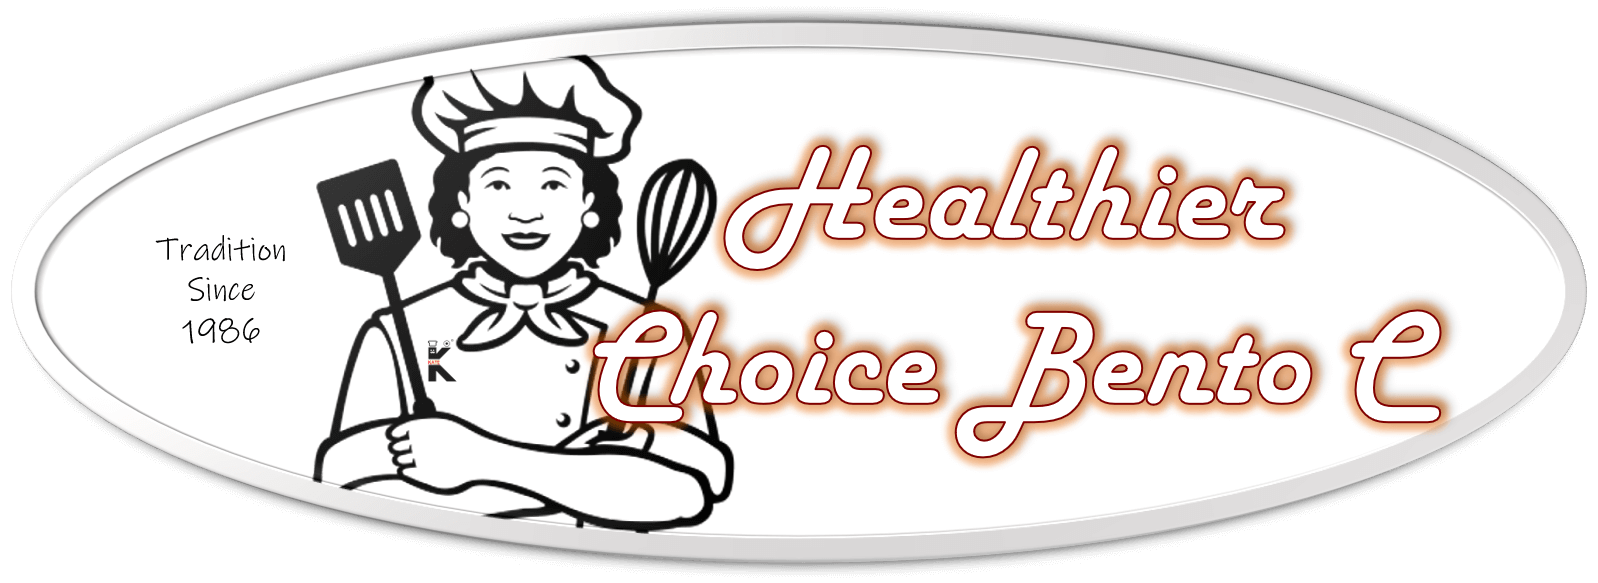 Healthier Choice Bento C